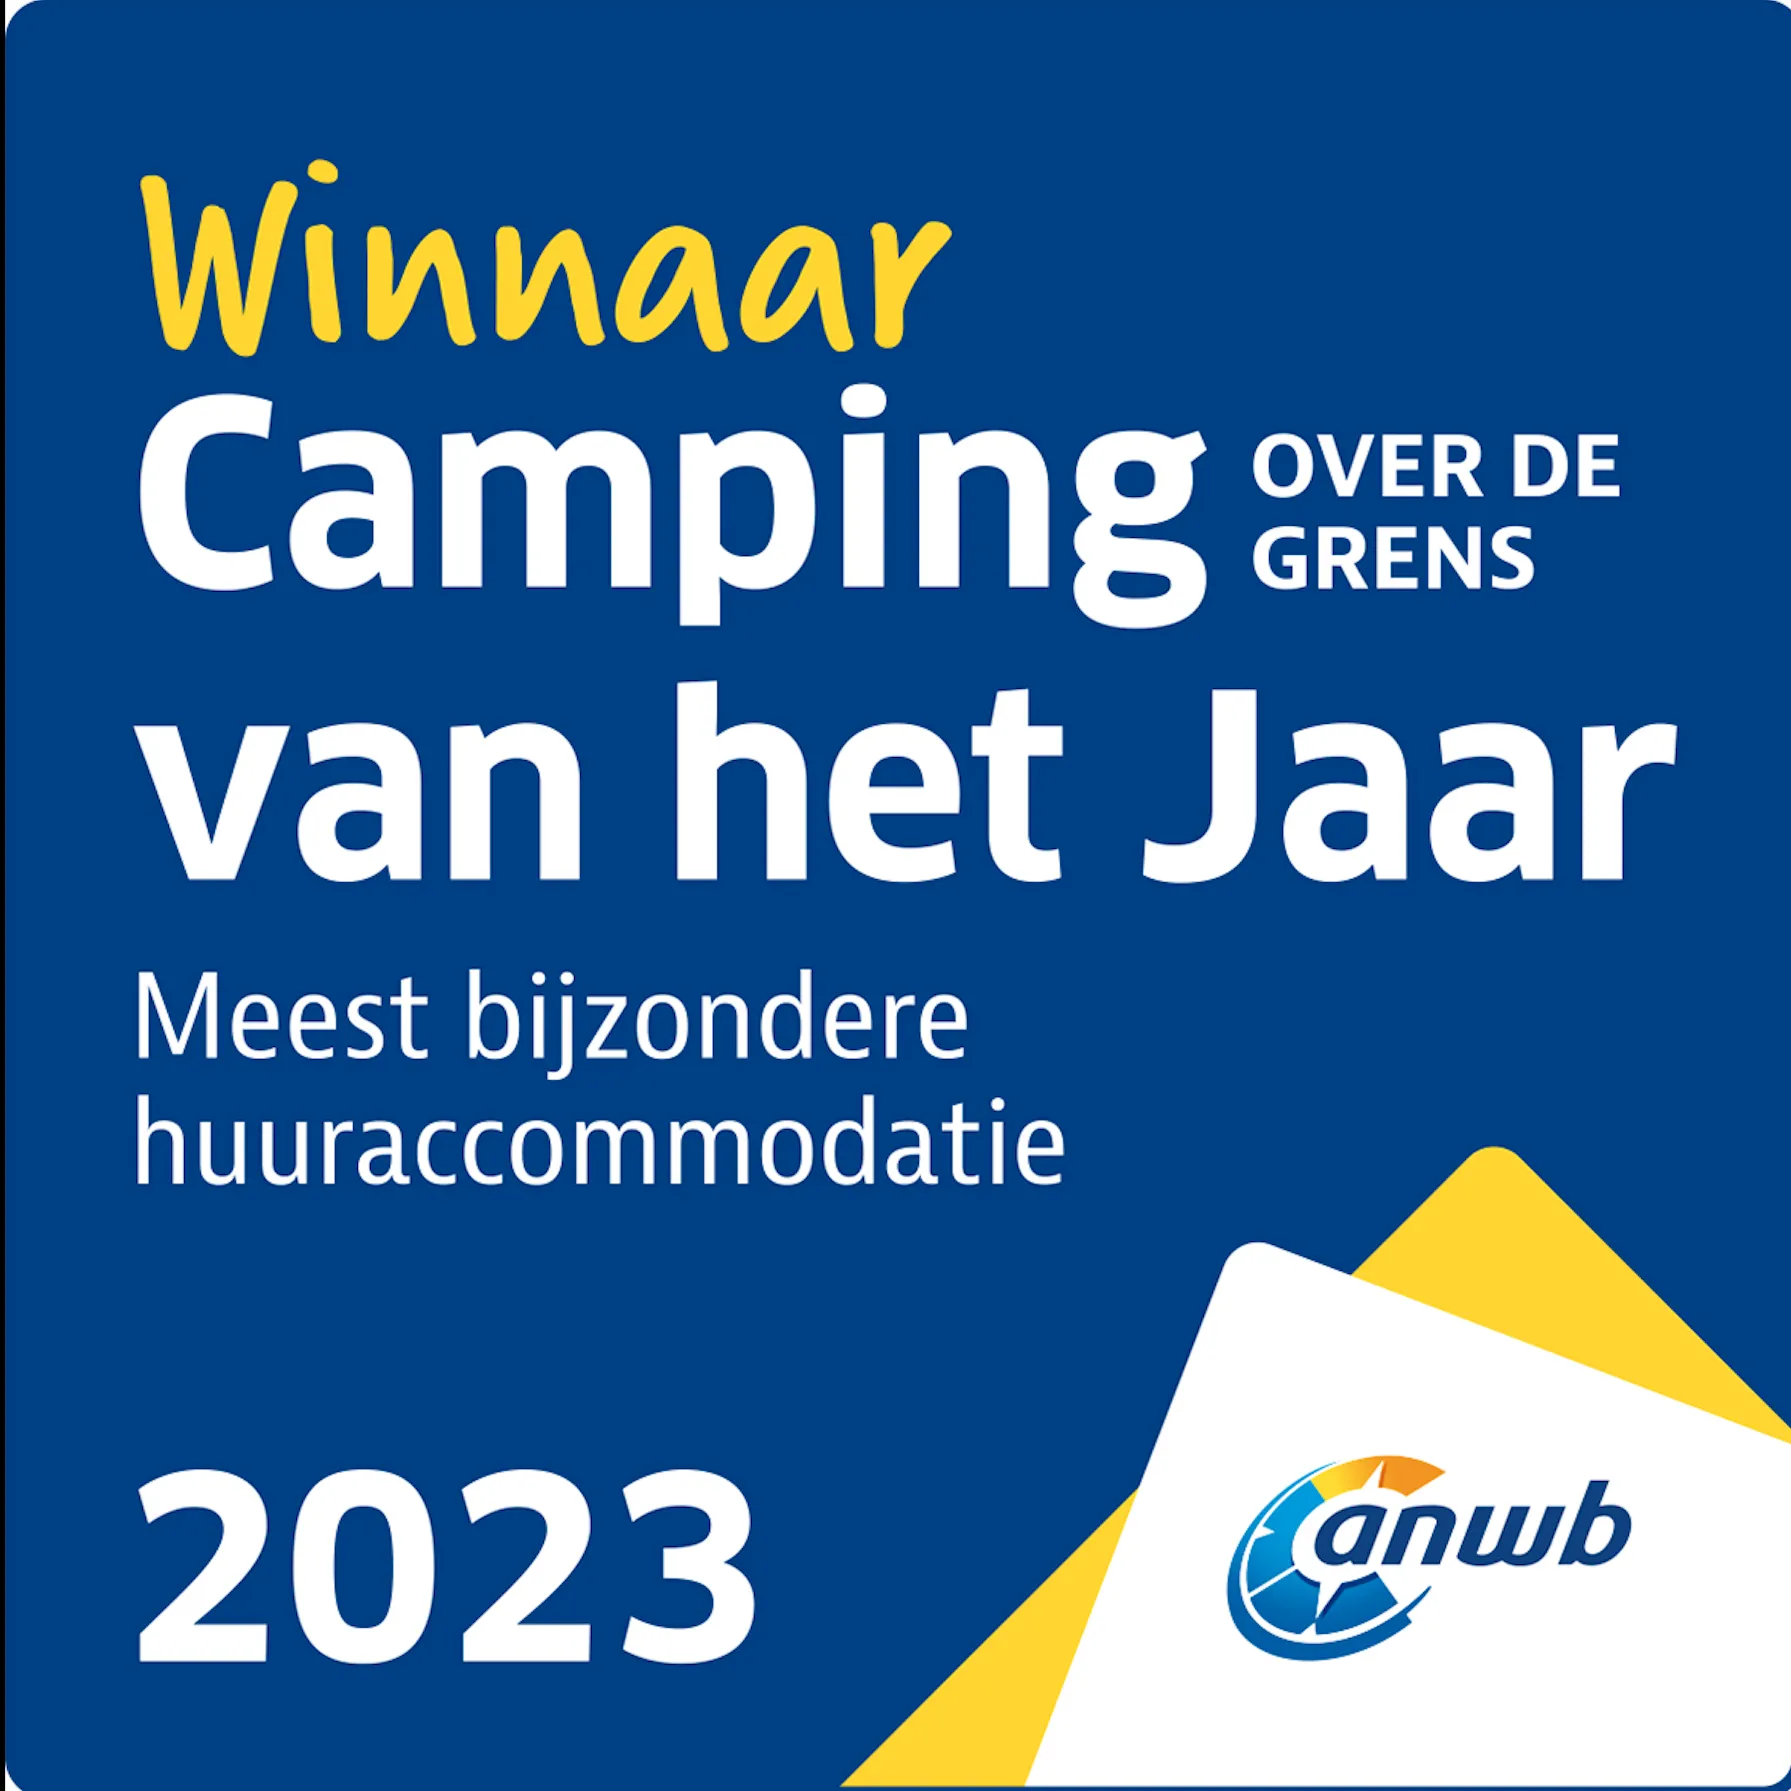 Lago Idro Glamping Boutique wint ANWB beste camping van het jaar- meest bijzondere huuraccommodatie in het buitenland!